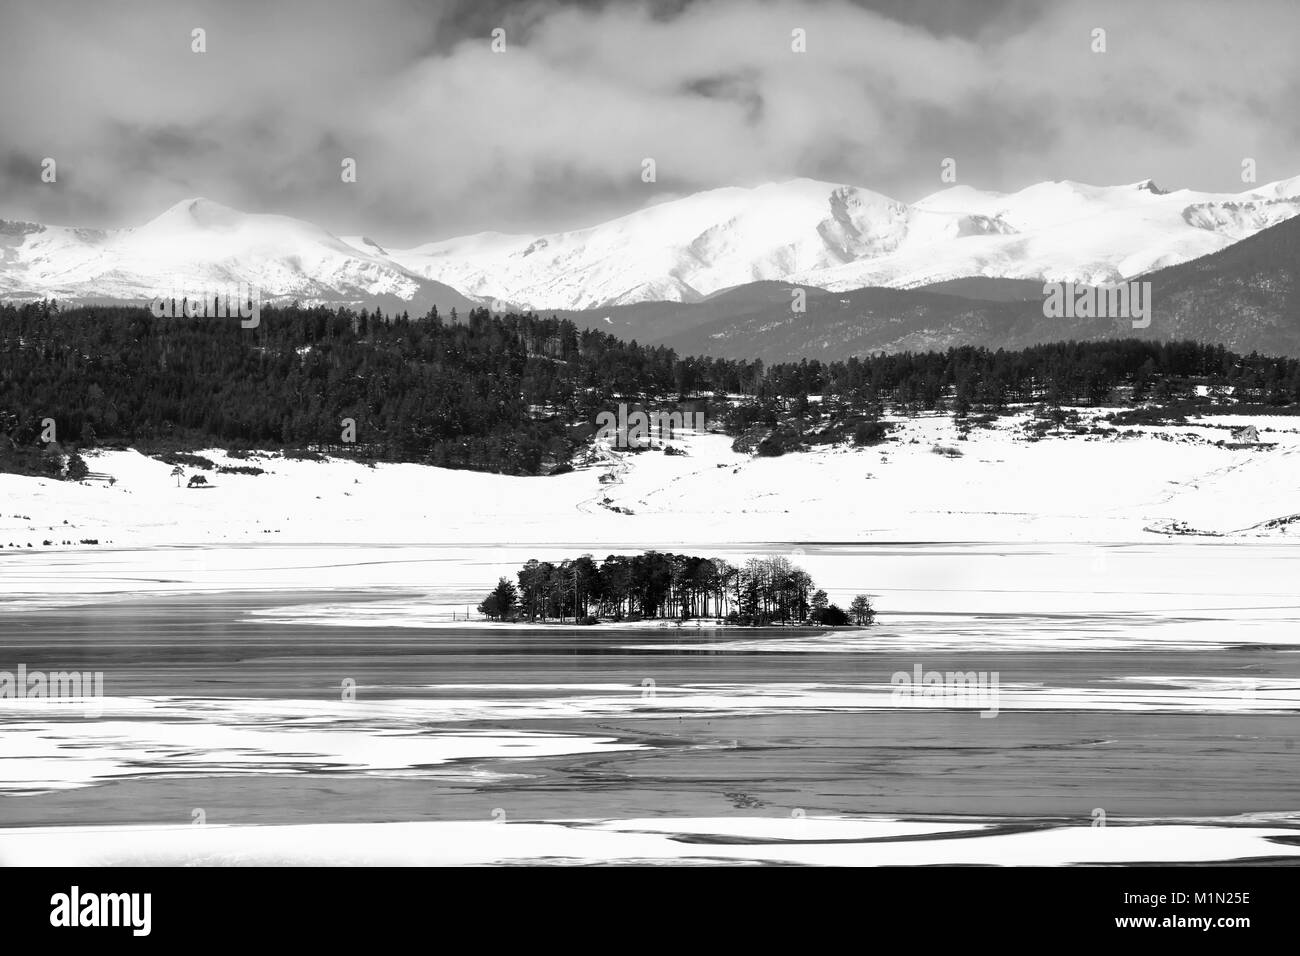 Les petits États insulaires en hiver lac couvert de glace en noir et blanc, montagnes bulgares Banque D'Images